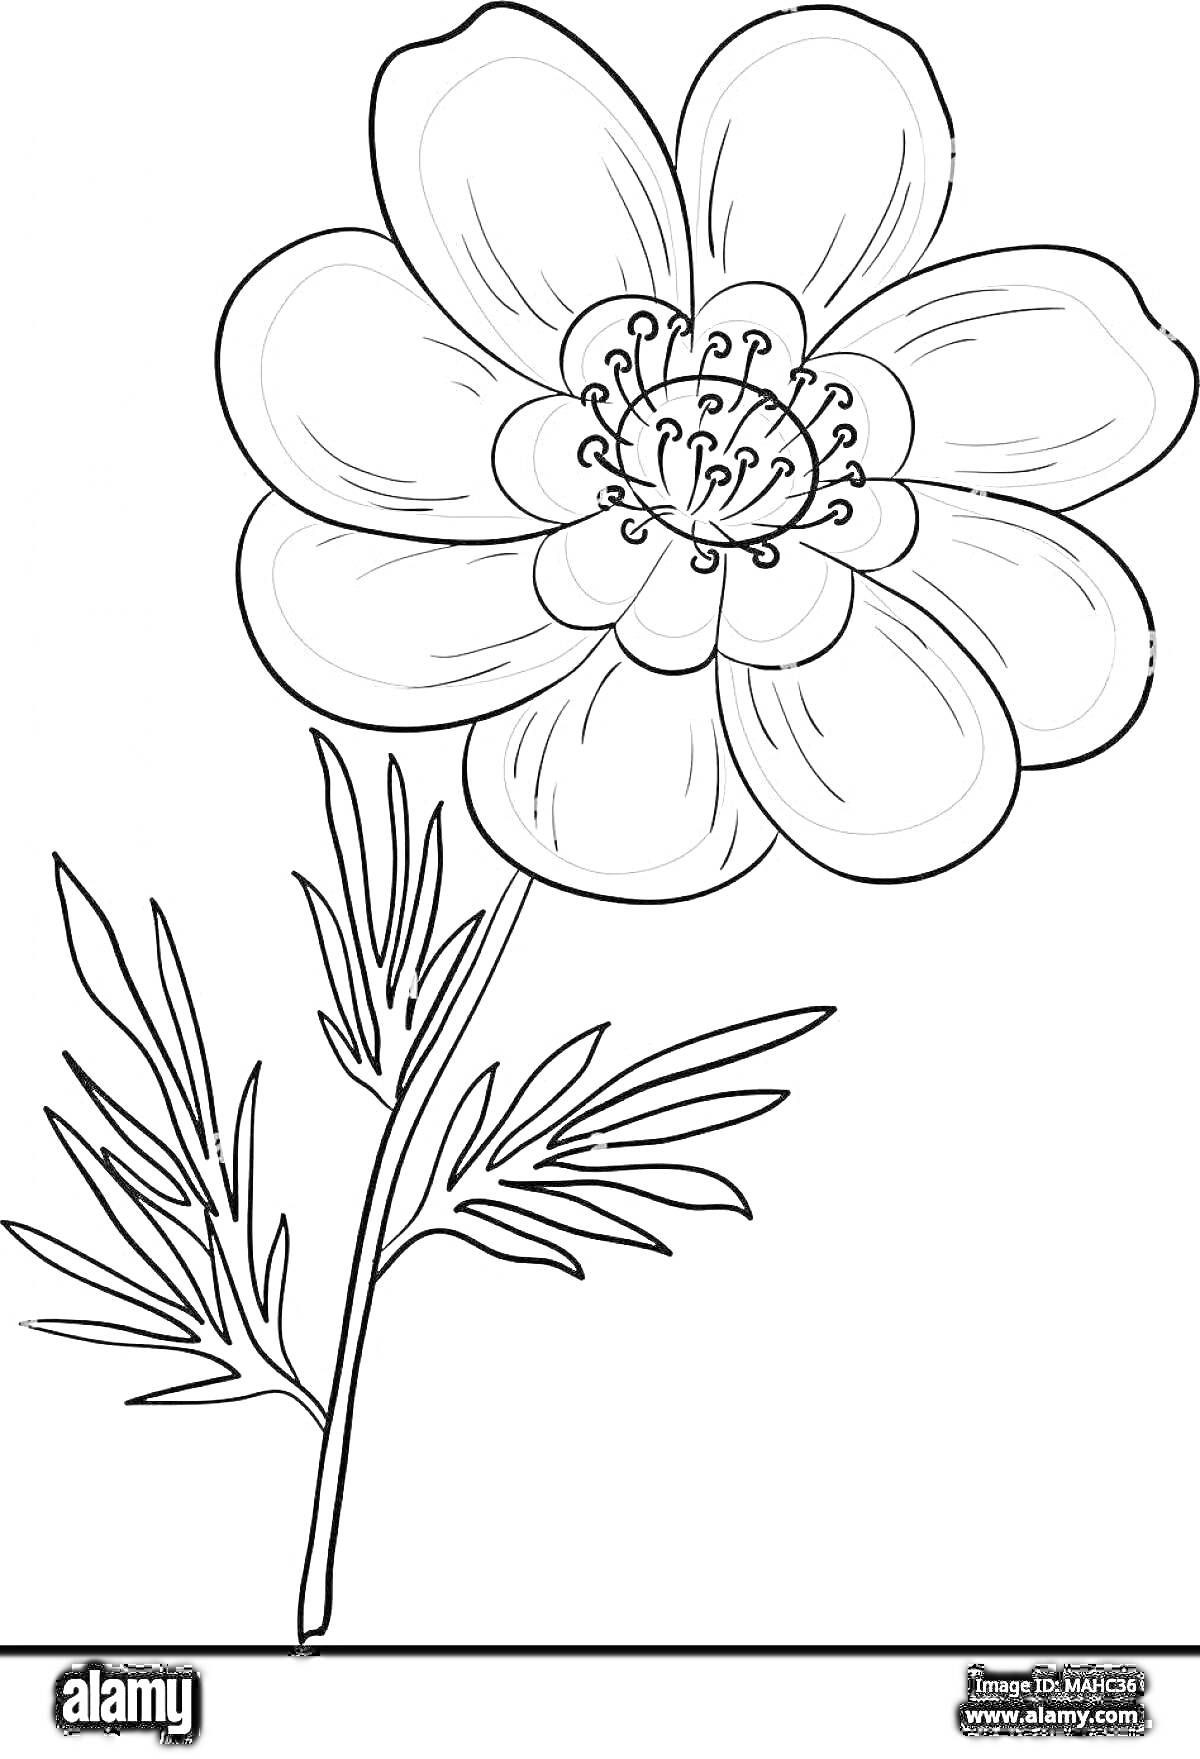 Раскраска Лазорик - цветок с крупными лепестками и центральной сердцевиной, внизу стебля несколько длинных листьев.